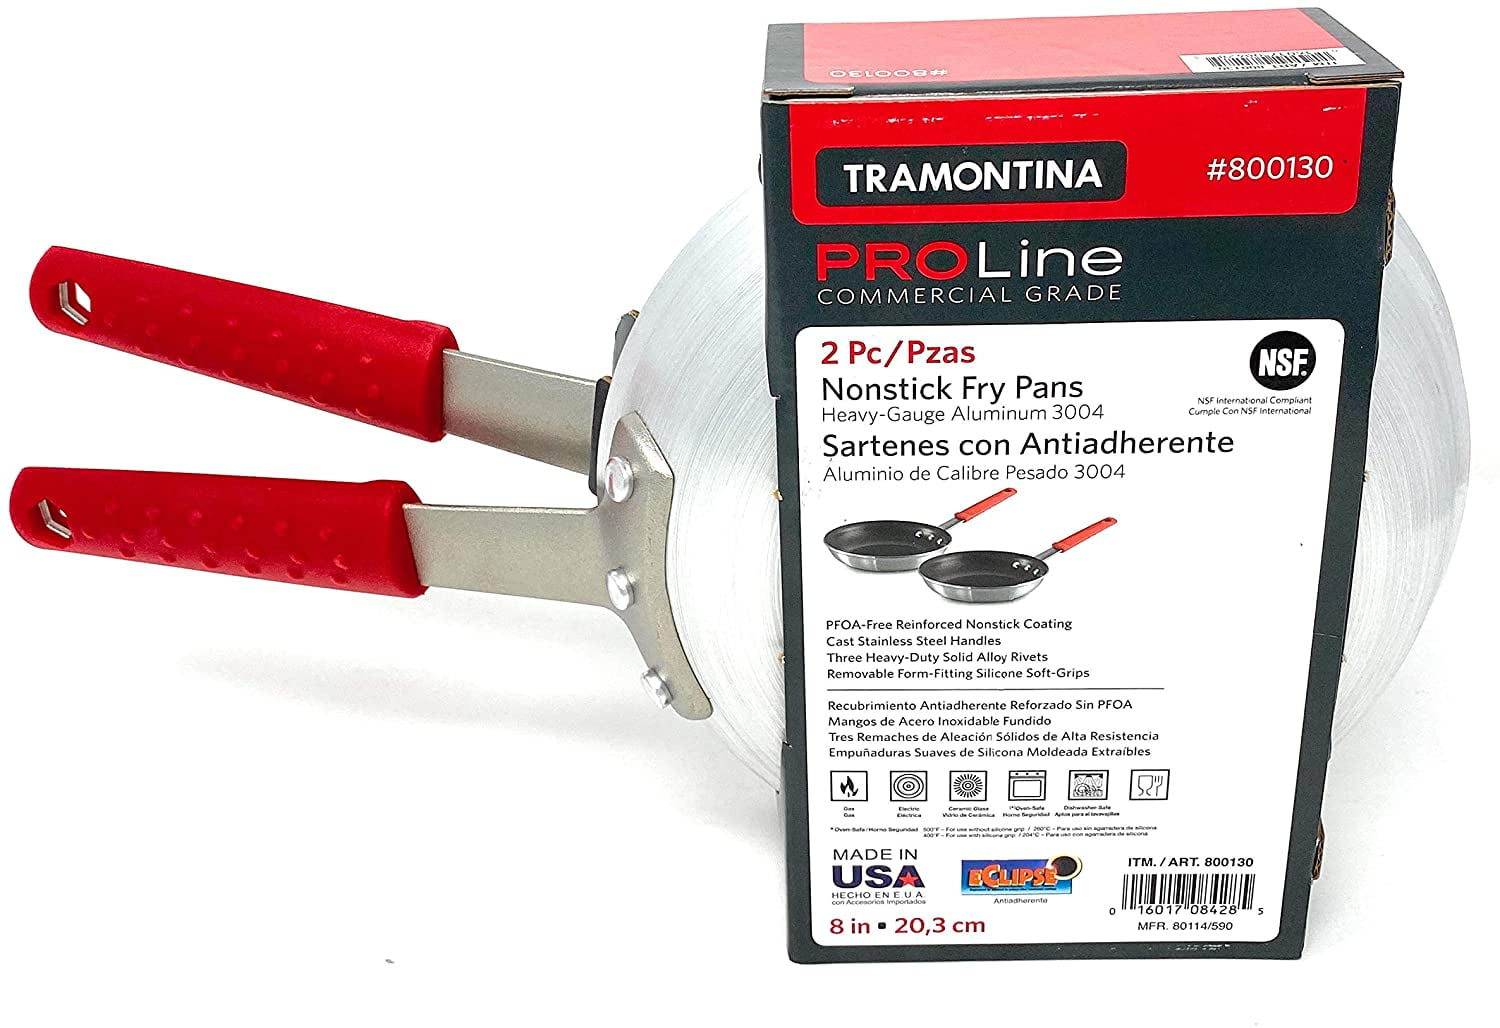 Tramontina Pro Line 2pk Fry Pan Set